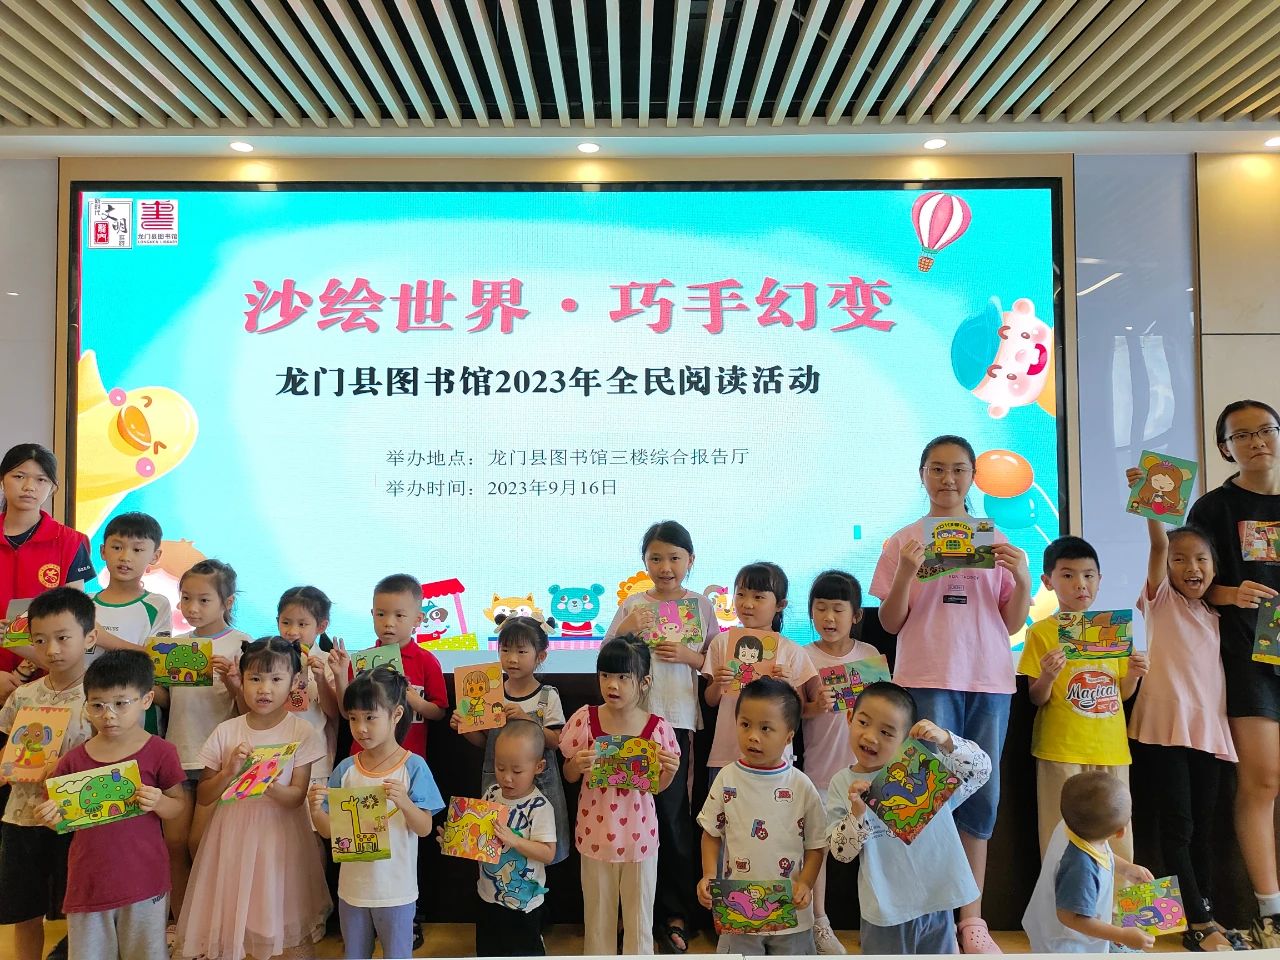 “沙绘世界·巧手幻变”——龙门县图书馆2023年全民阅读活动